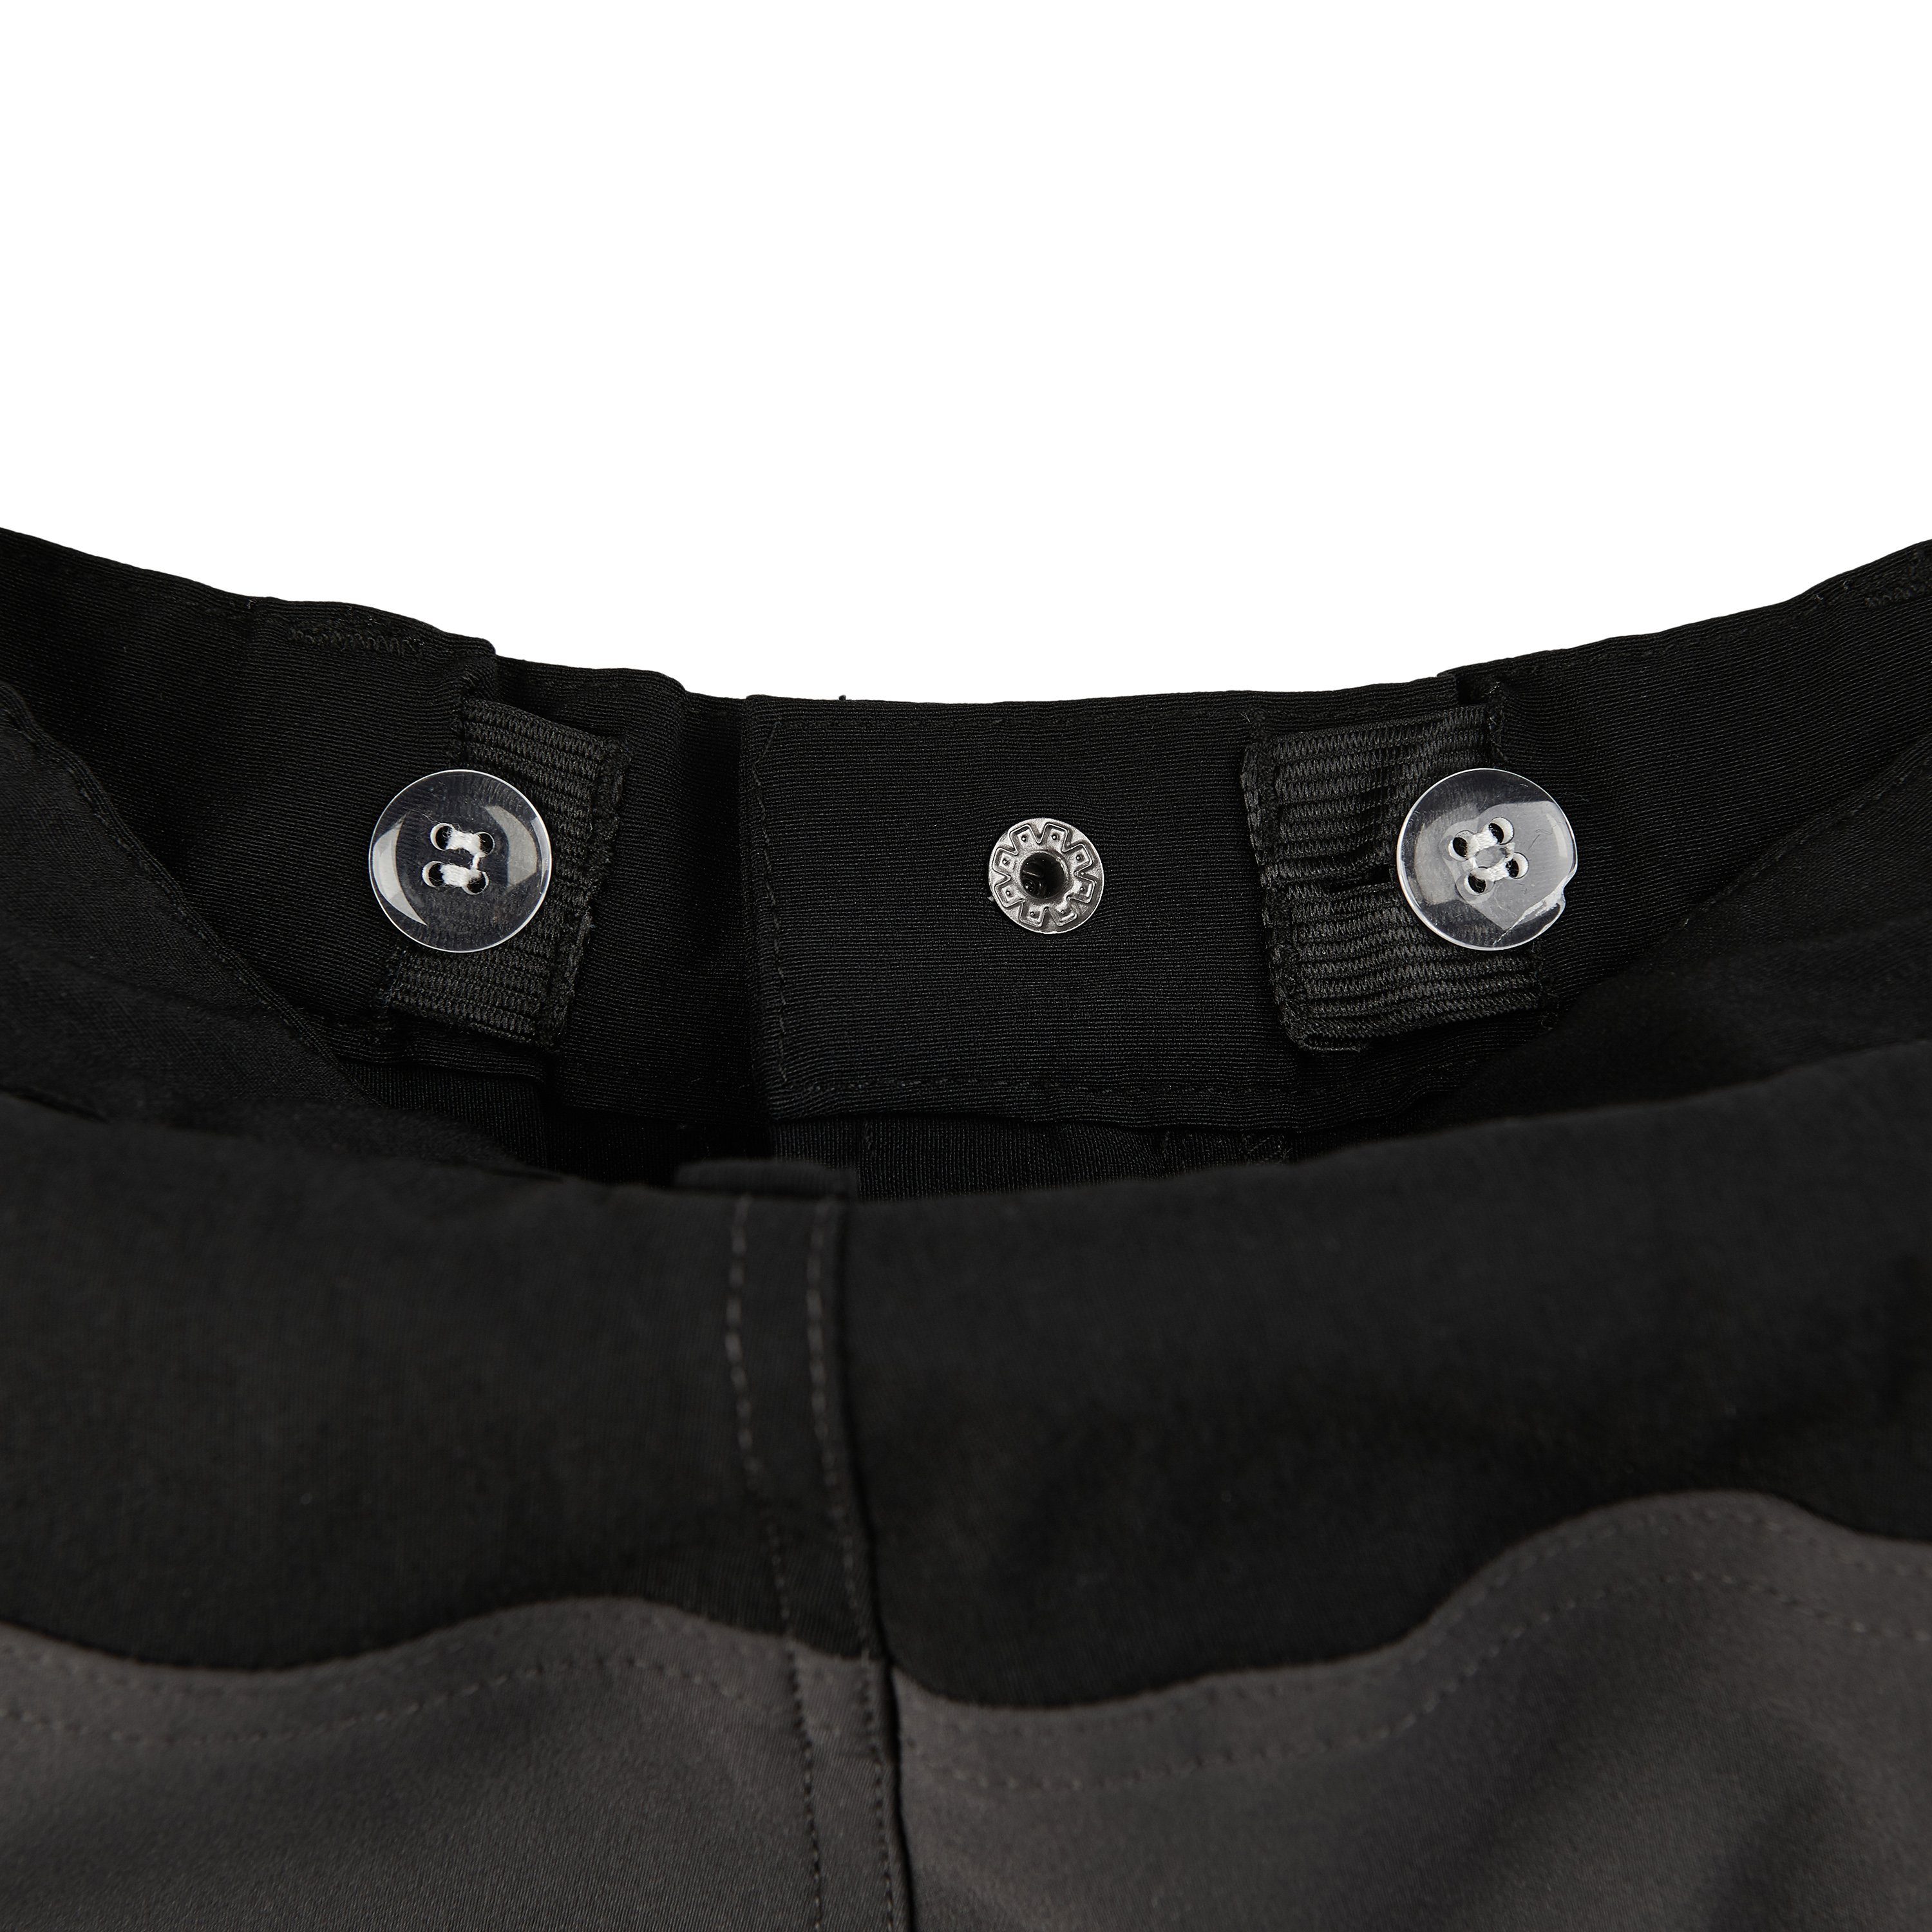 COLOR KIDS Softshellhose COOutdoor Black mit Pants (140) 5443 Softshellhose Reißverschlusstaschen